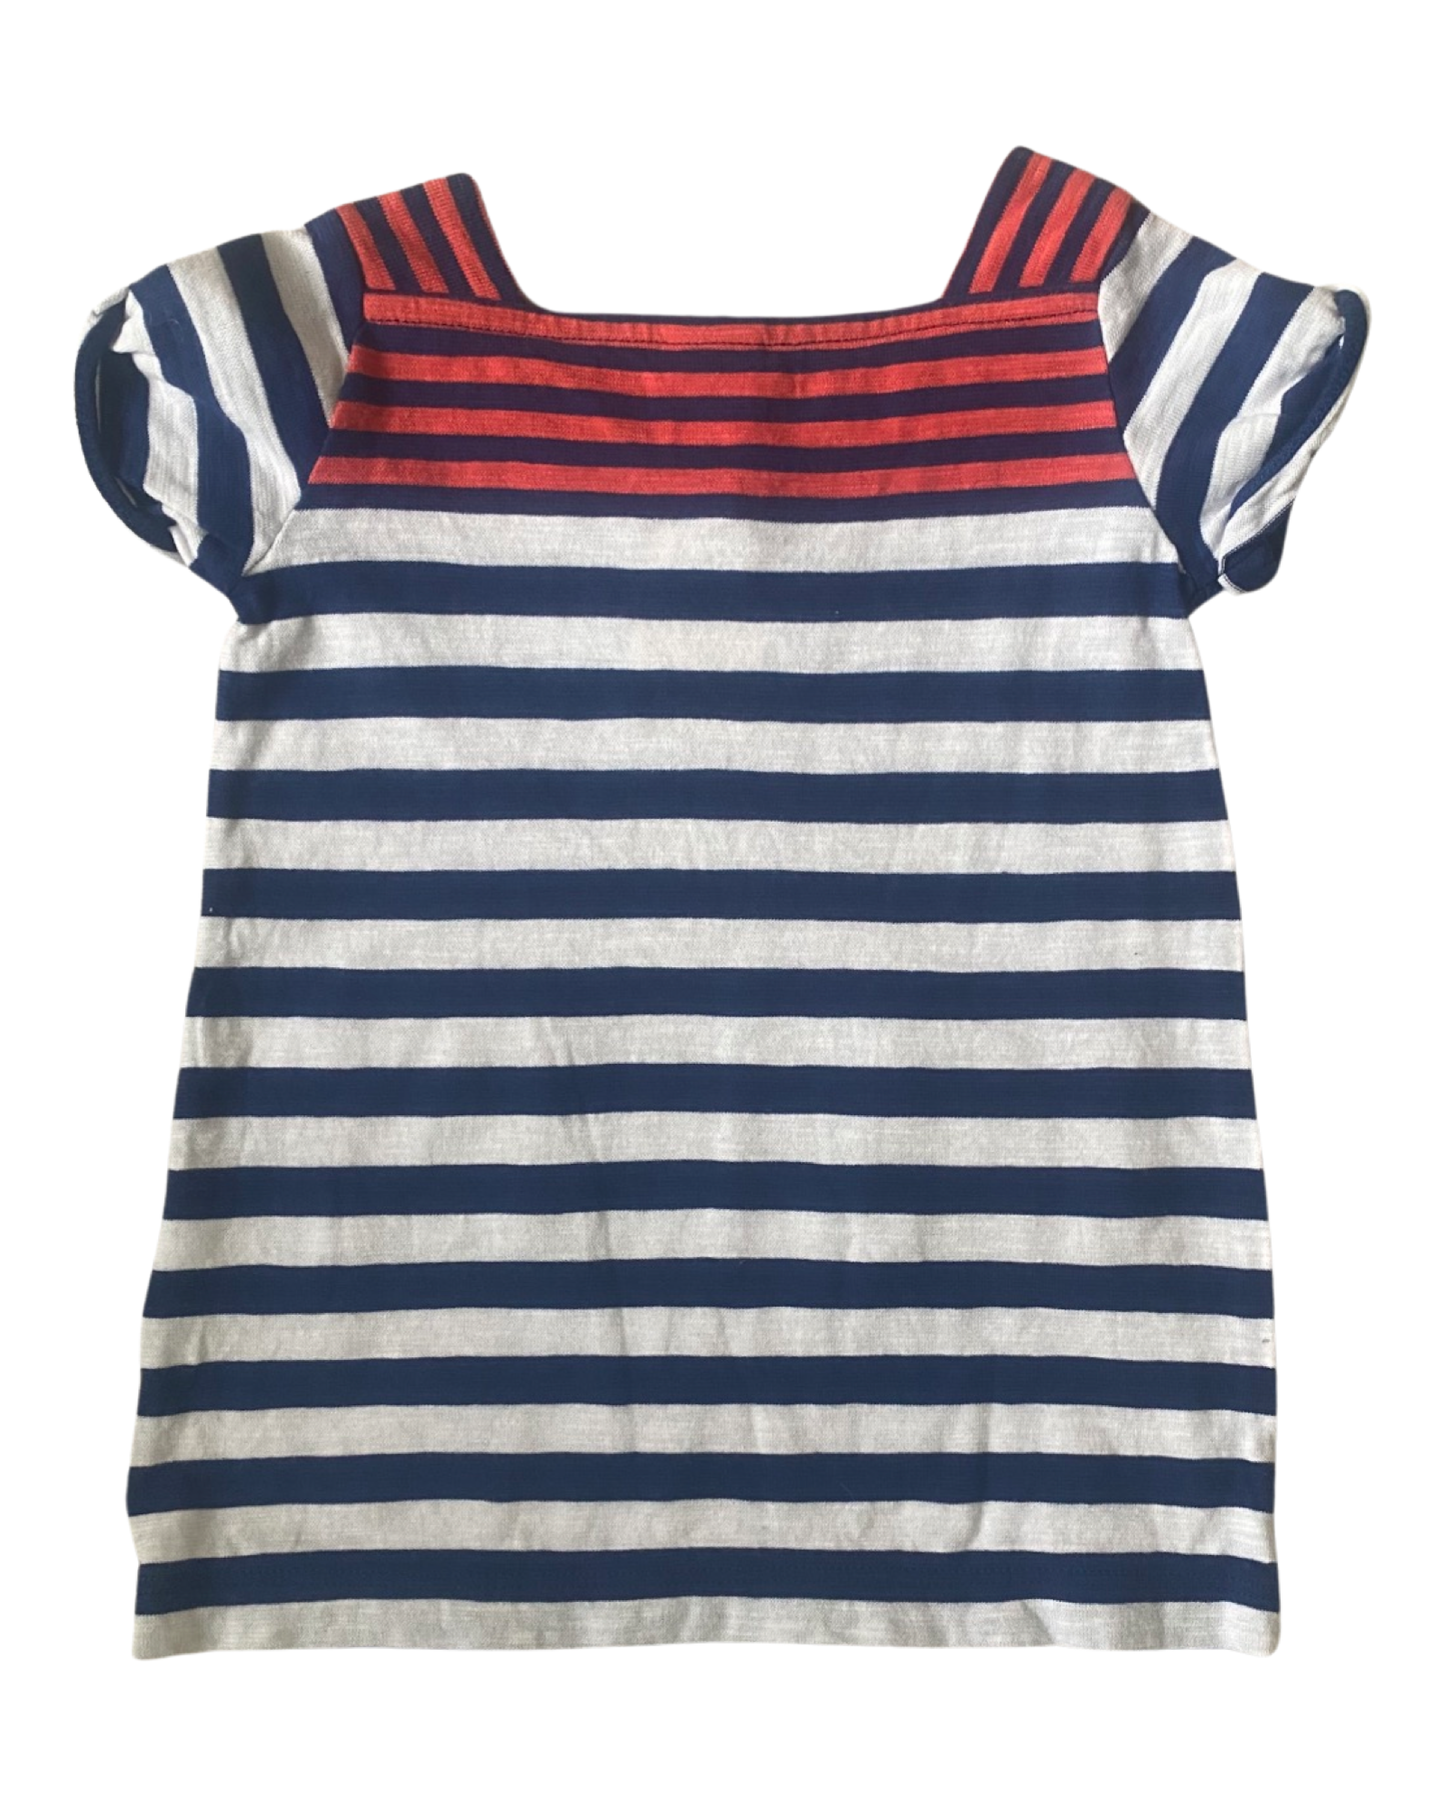 Petit Bateau breton striped baby dress (size 3-6mths)